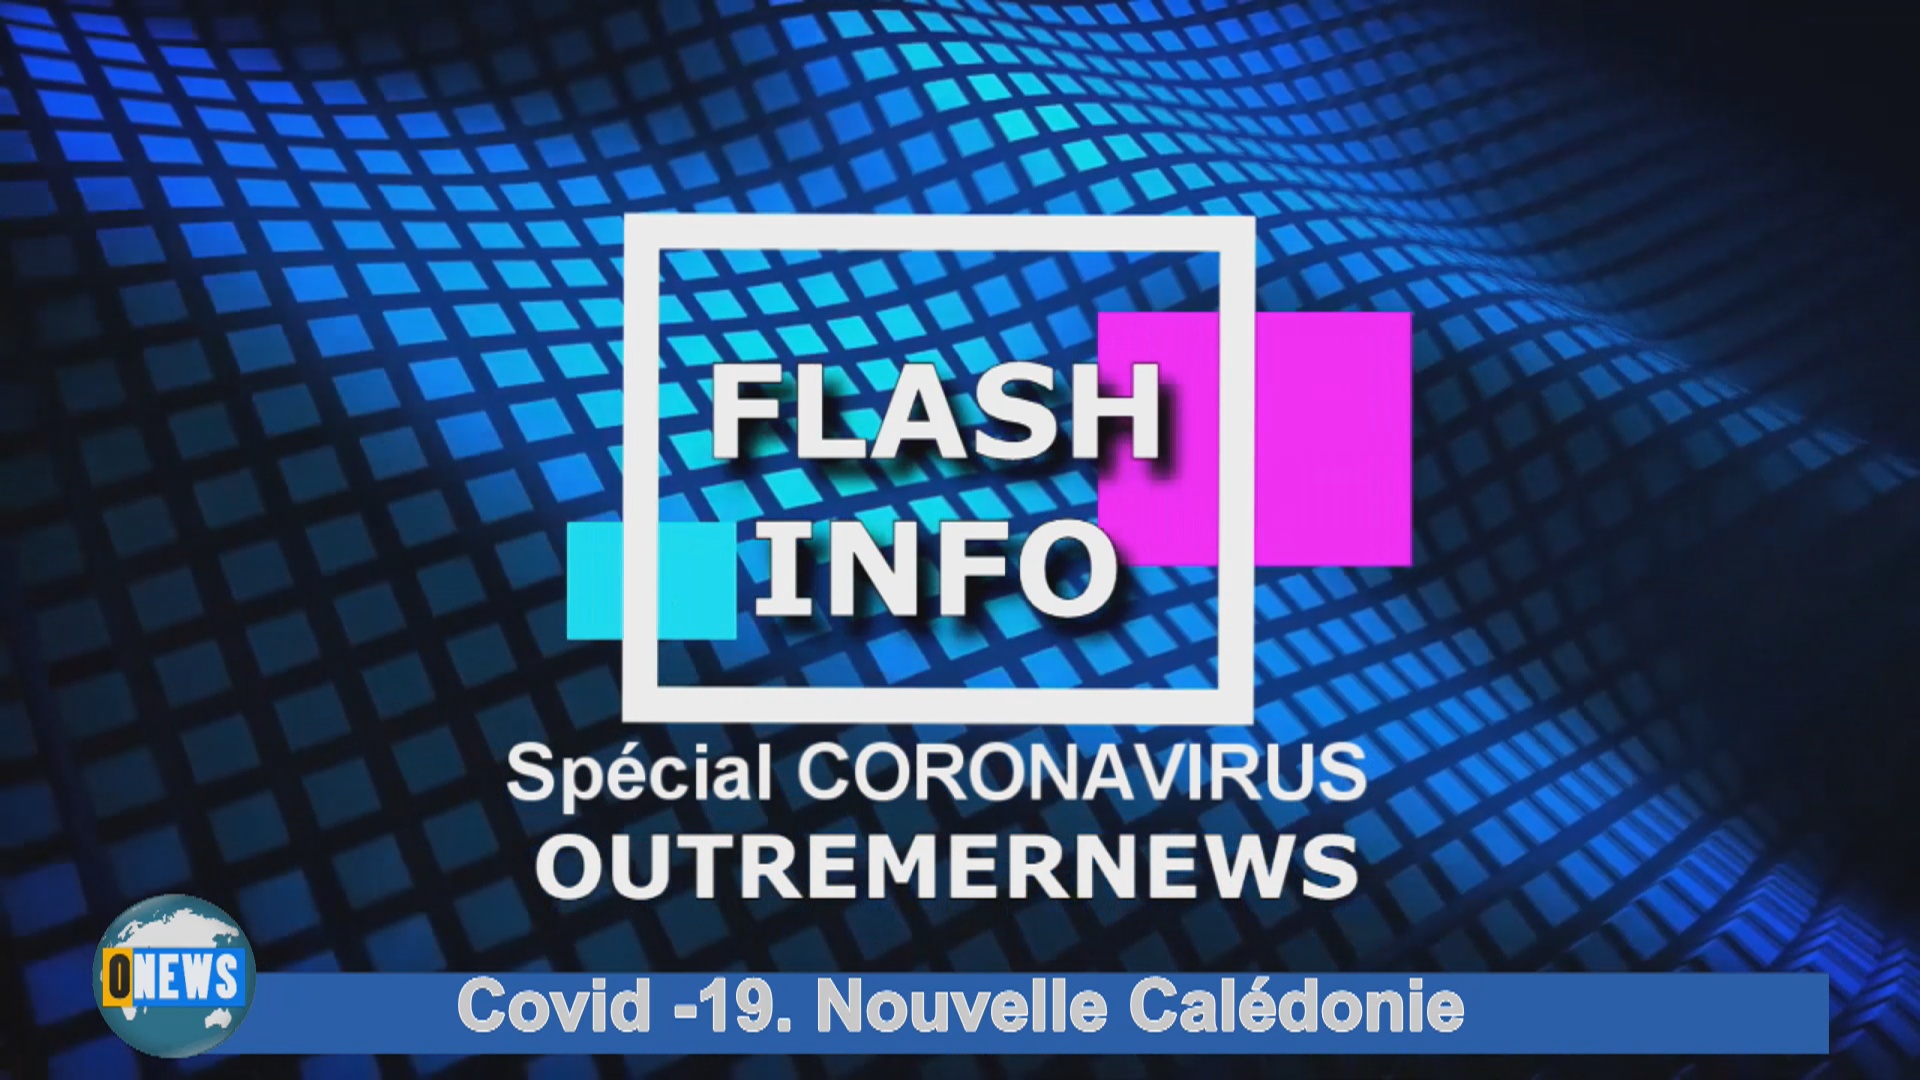 [Vidéo] Onews Covid 19 Édition Spéciale Nouvelle Calédonie avec Caledonia